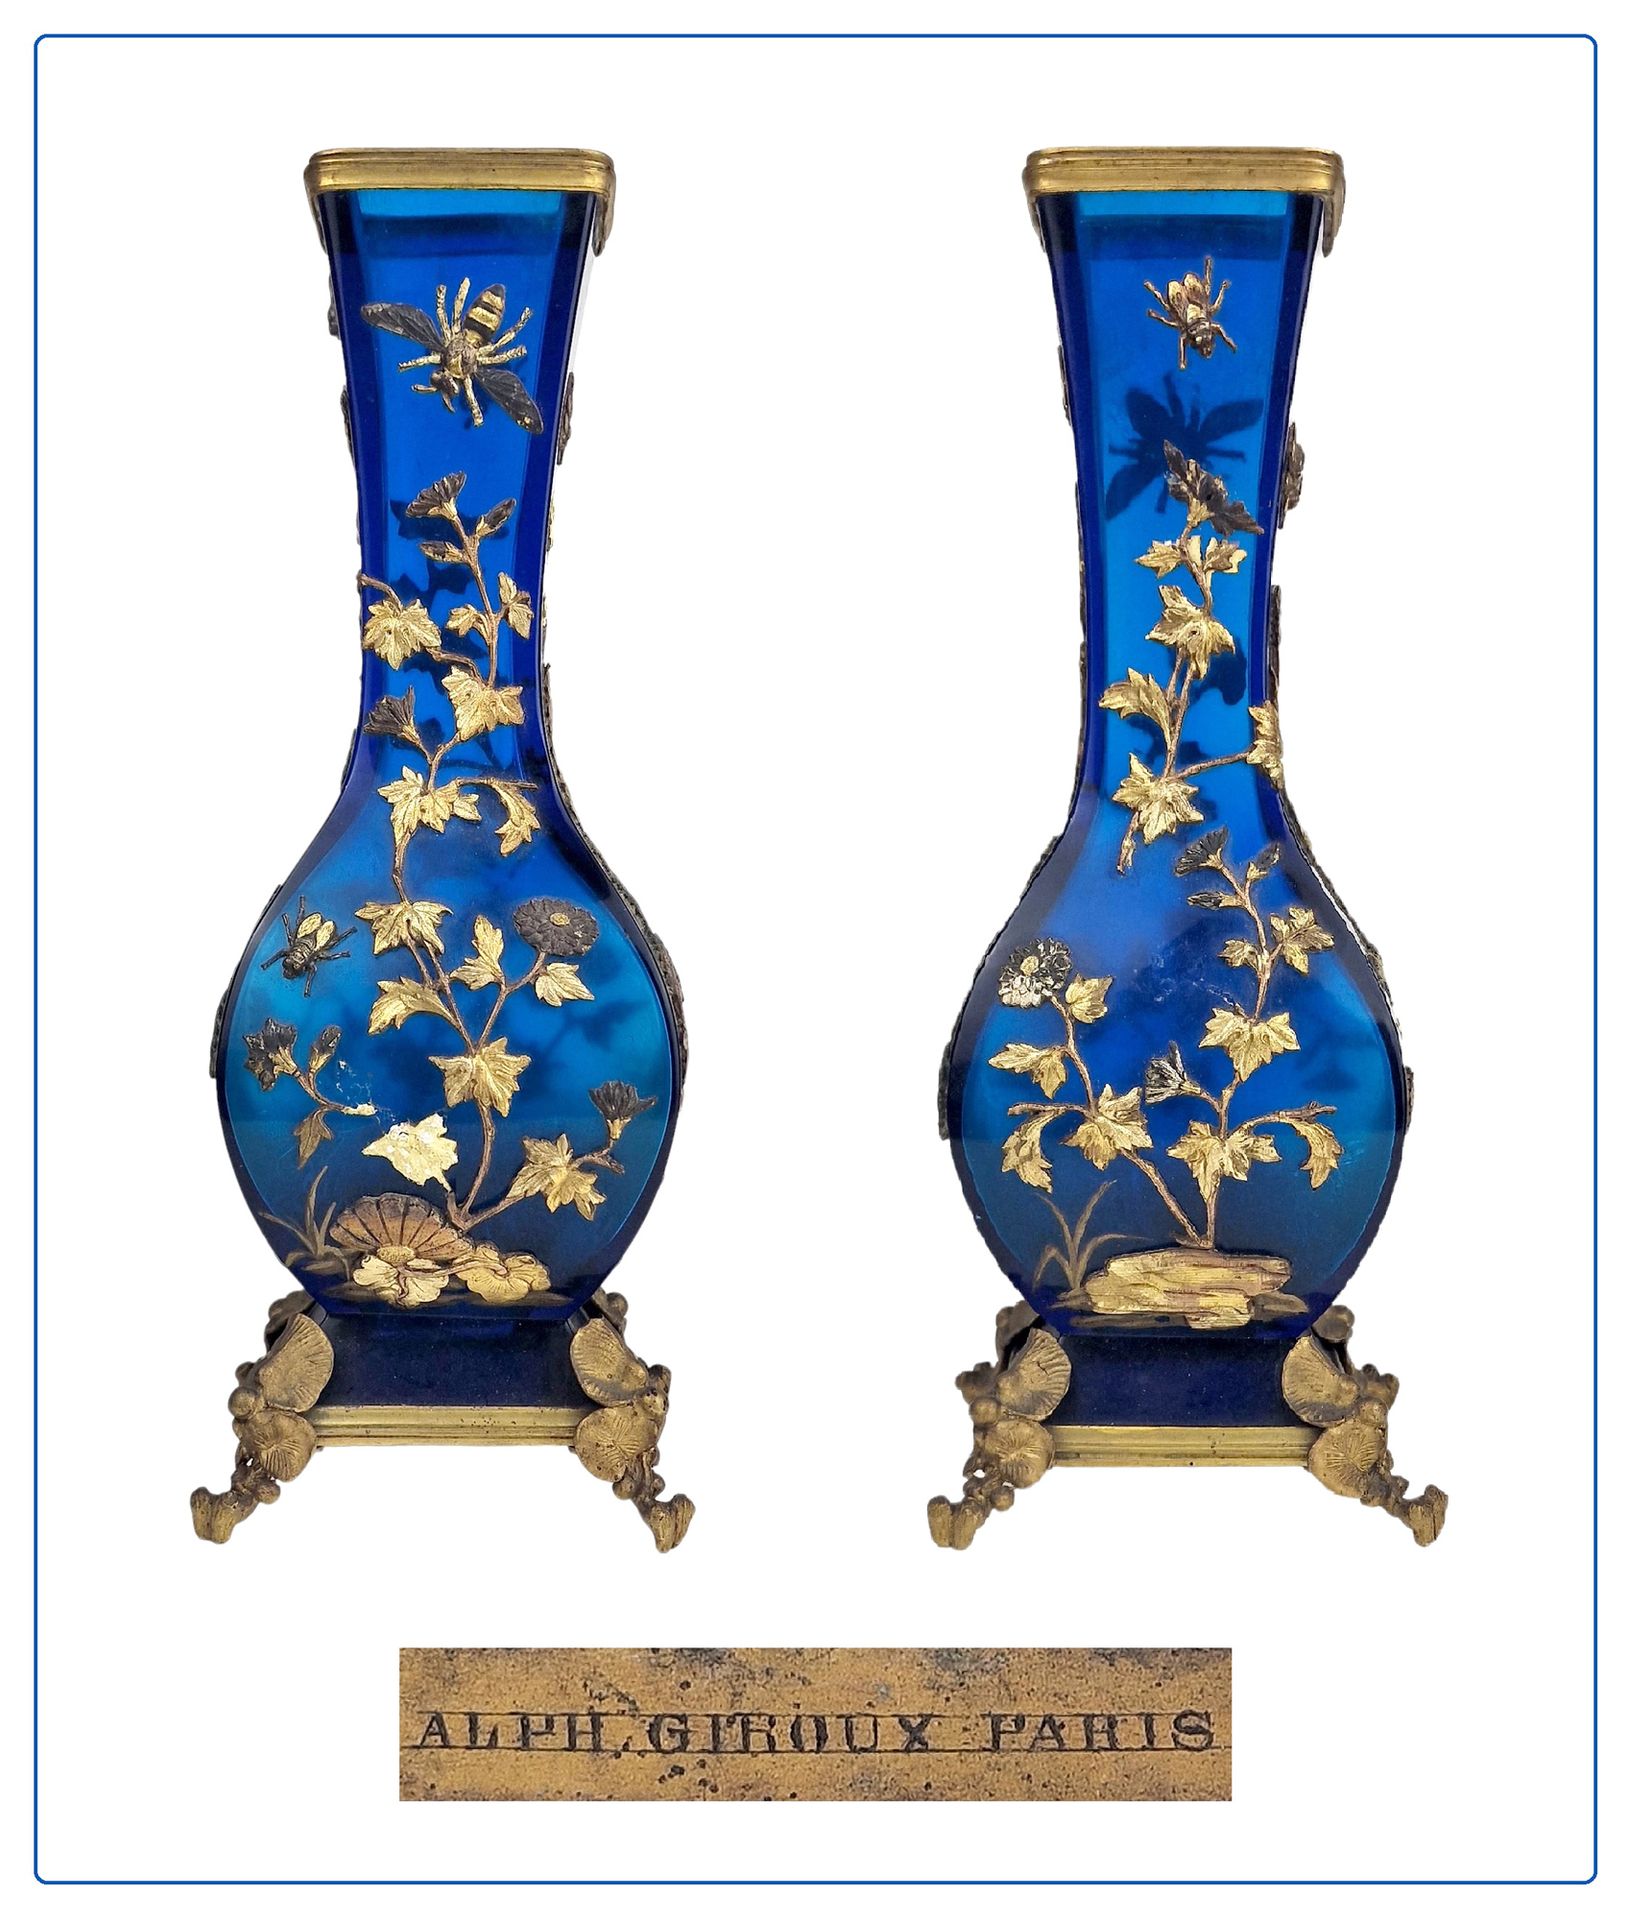 ALPHONSE GIROUX, PARIS 19ème SIECLE Par de jarrones japoneses



En vidrio azula&hellip;